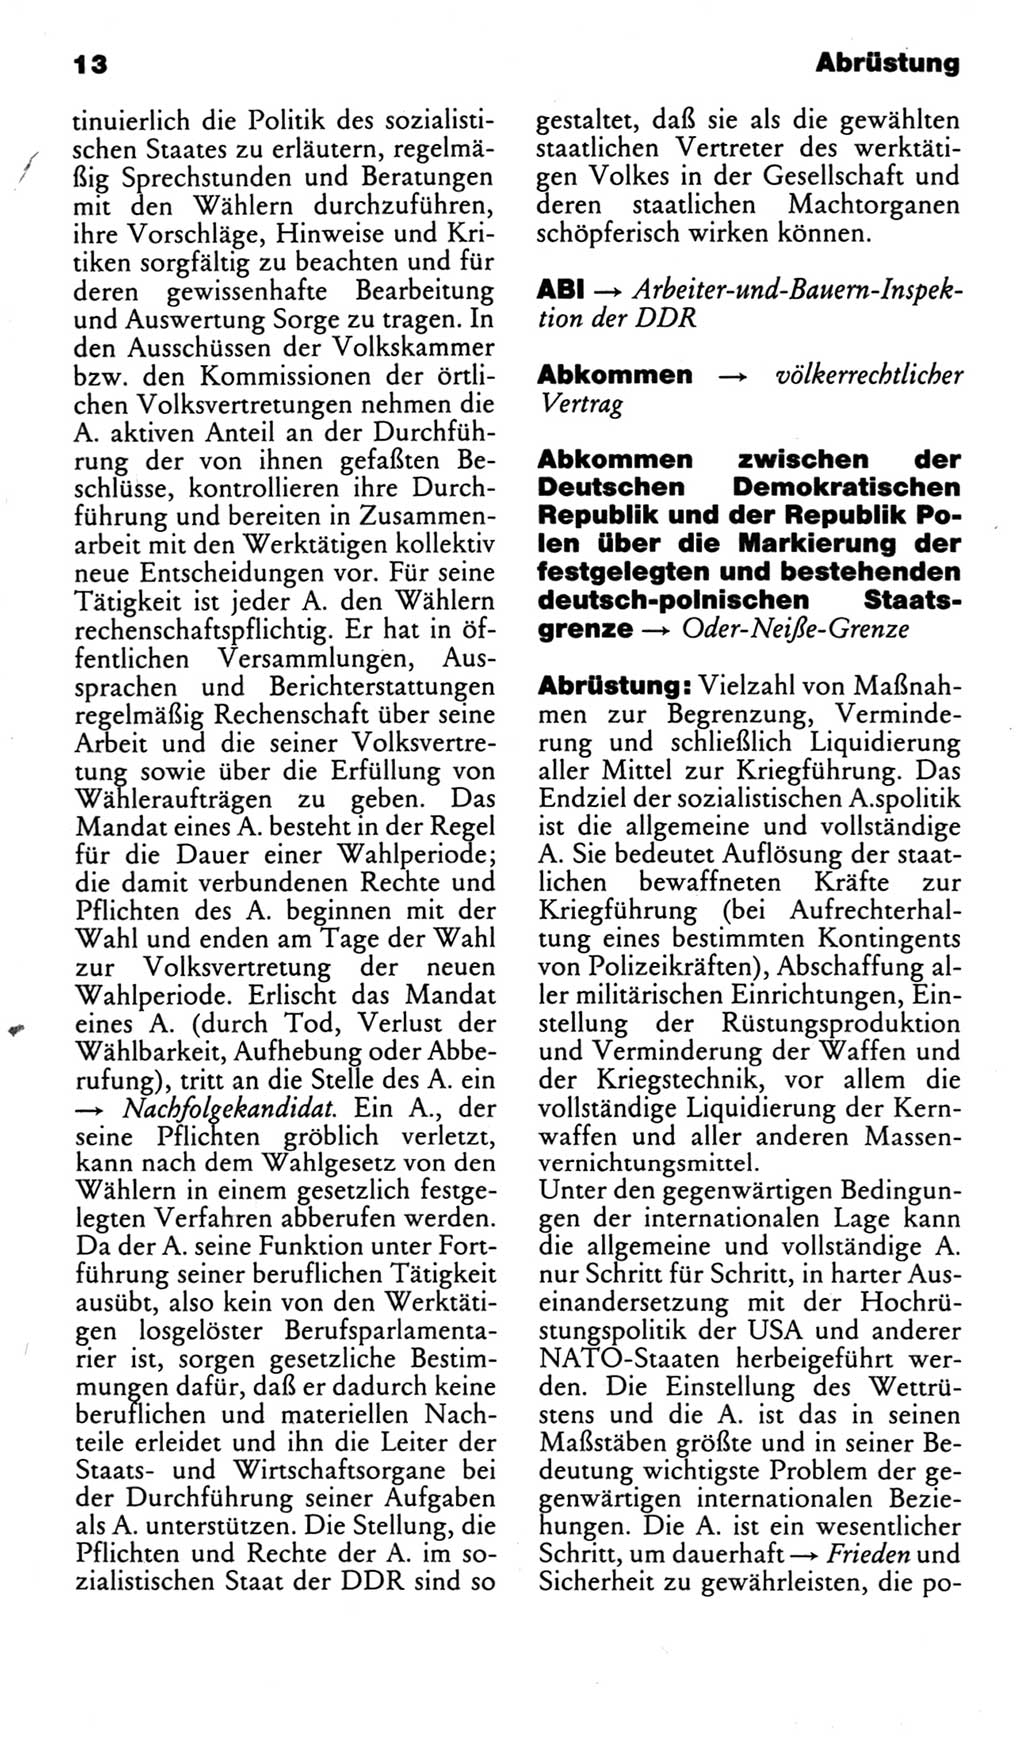 Kleines politisches Wörterbuch [Deutsche Demokratische Republik (DDR)] 1983, Seite 13 (Kl. pol. Wb. DDR 1983, S. 13)